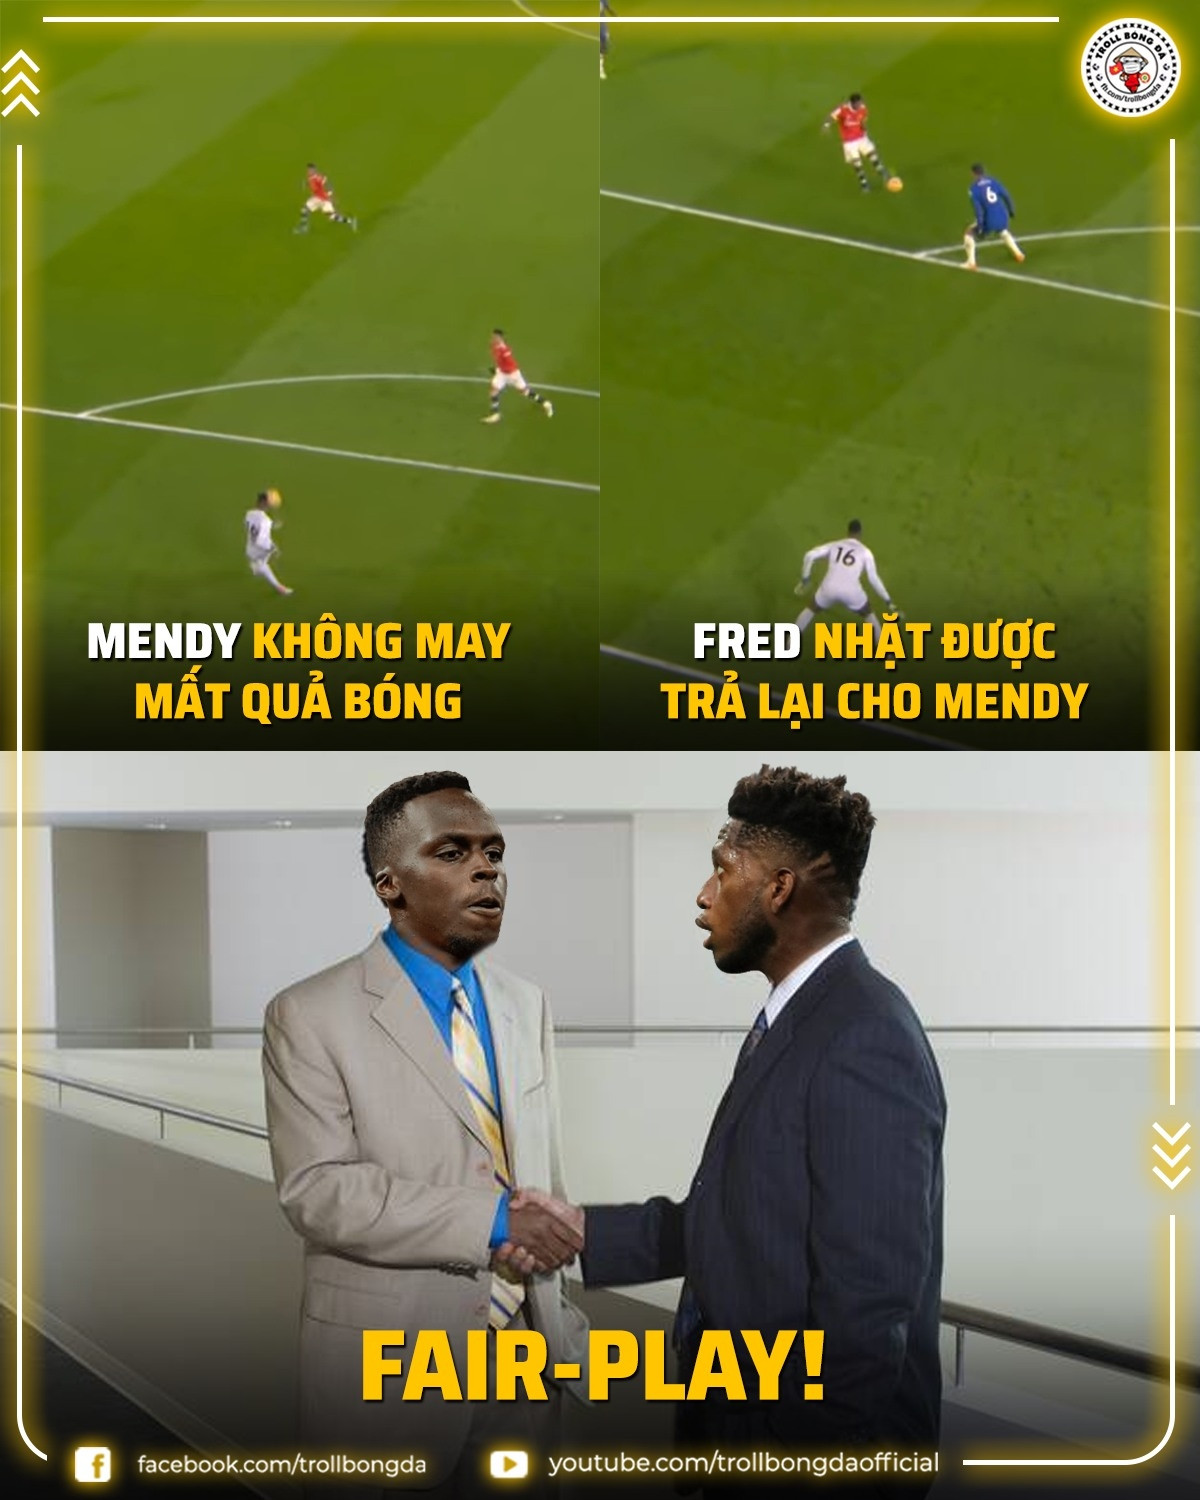 Fred thể hiện sự Fair-play trong trận Chelsea - MU. (Ảnh: Troll Bóng đá). 